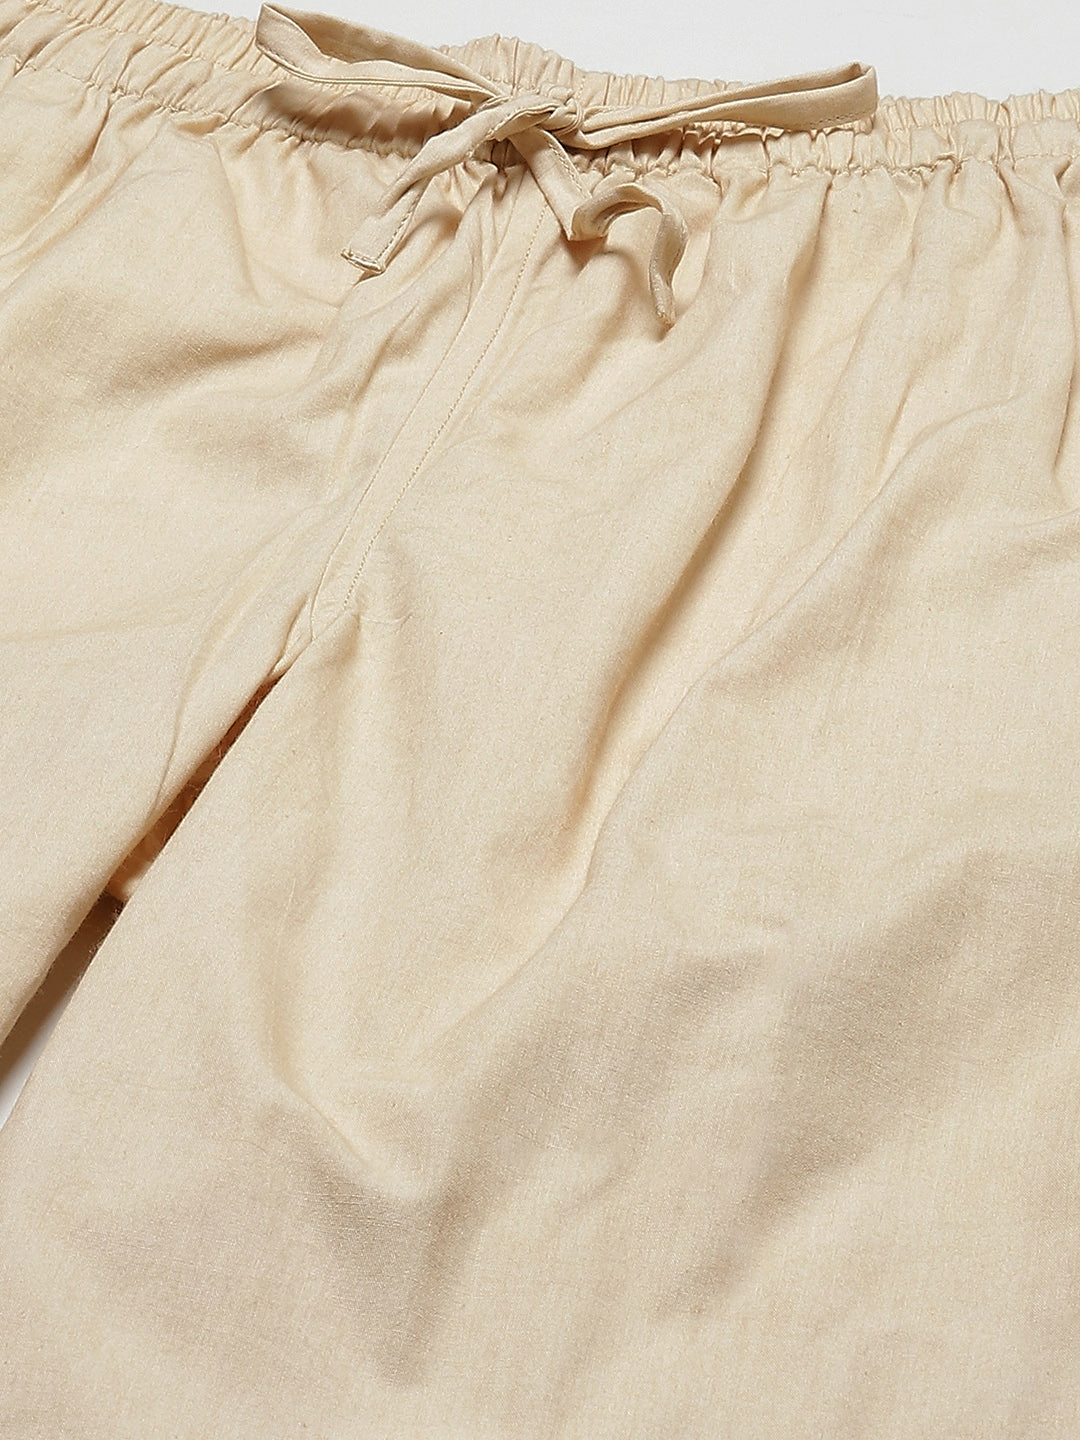 Combo Pack of 2: Beige Solid Cotton Pyjamas